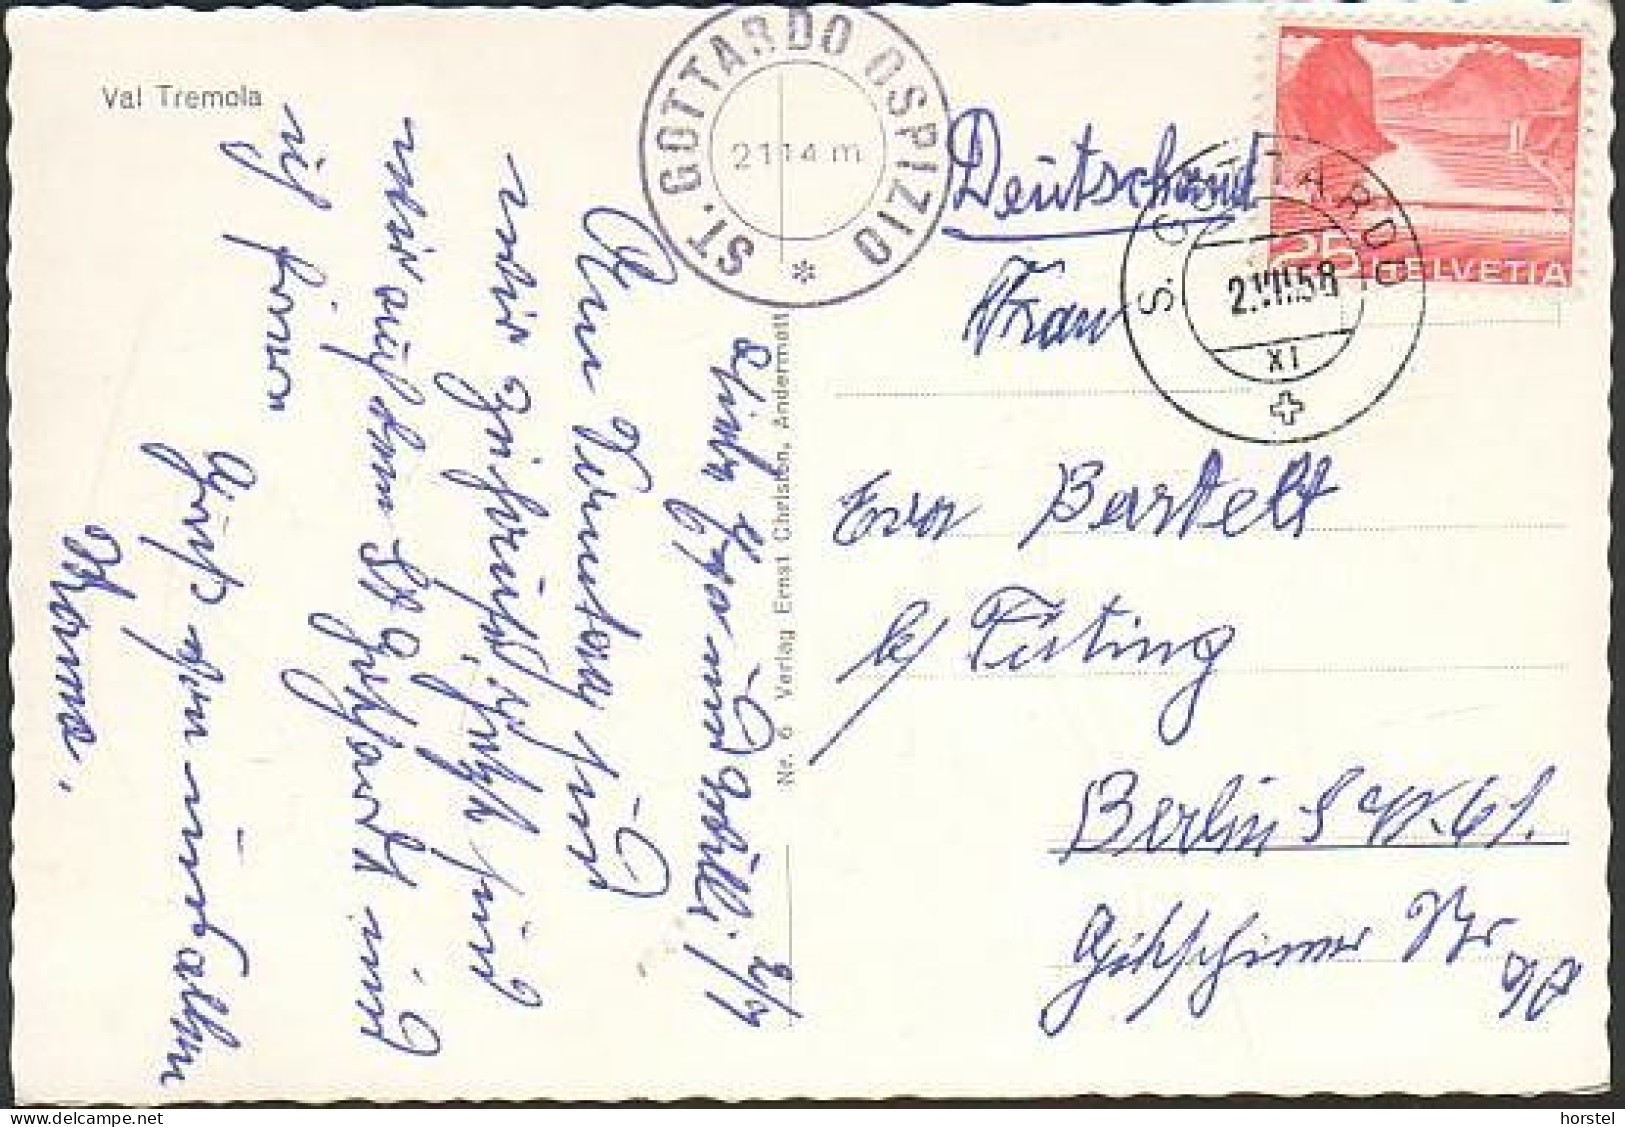 Schweiz - St. Gotthard Passtraße - Val Tremola - Nice Stamp 1958 - Airolo